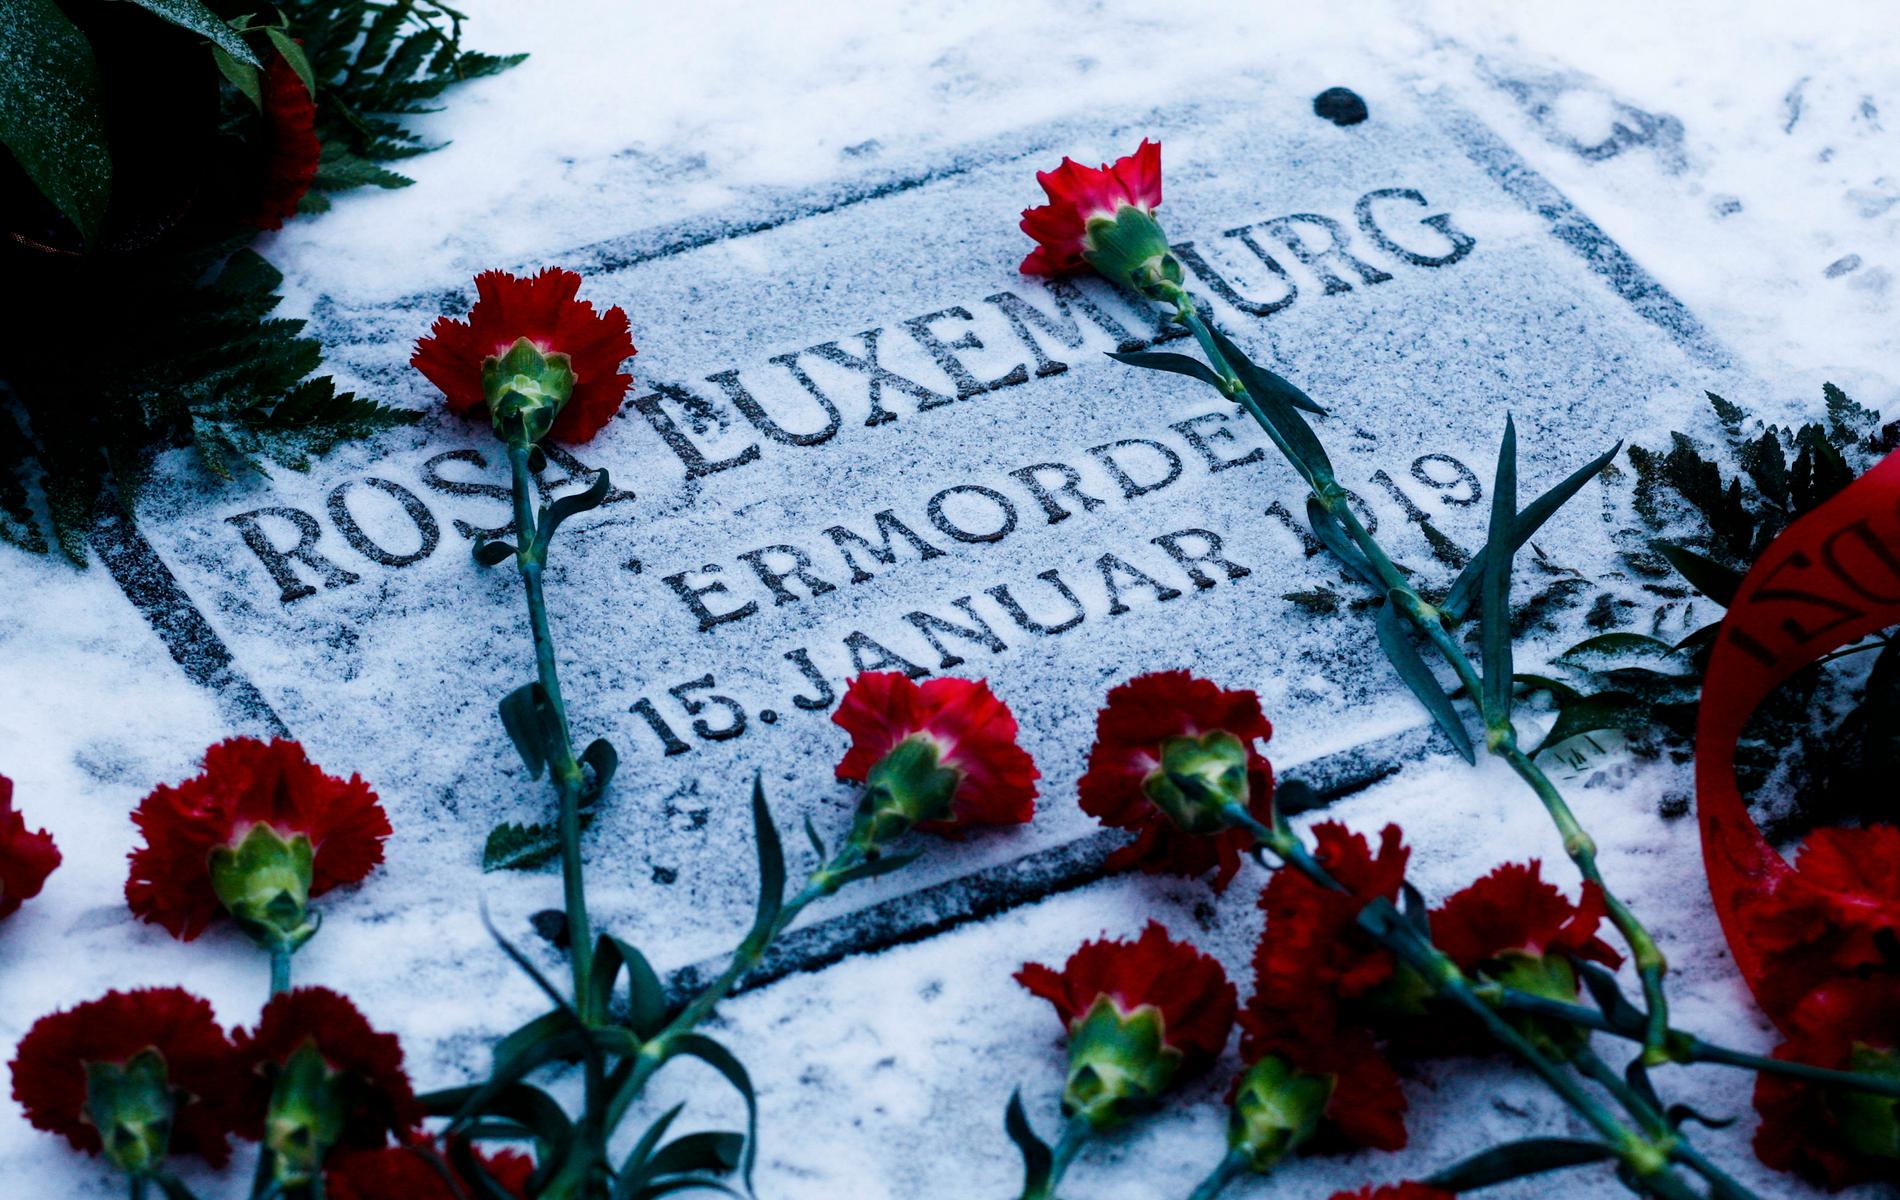 Röda rosor på kommunistledaren Rosa Luxemburgs grav i Berlin. Hon dödades den 15 januari 1919 under det så kallade spartakistupproret. Arkivbild.